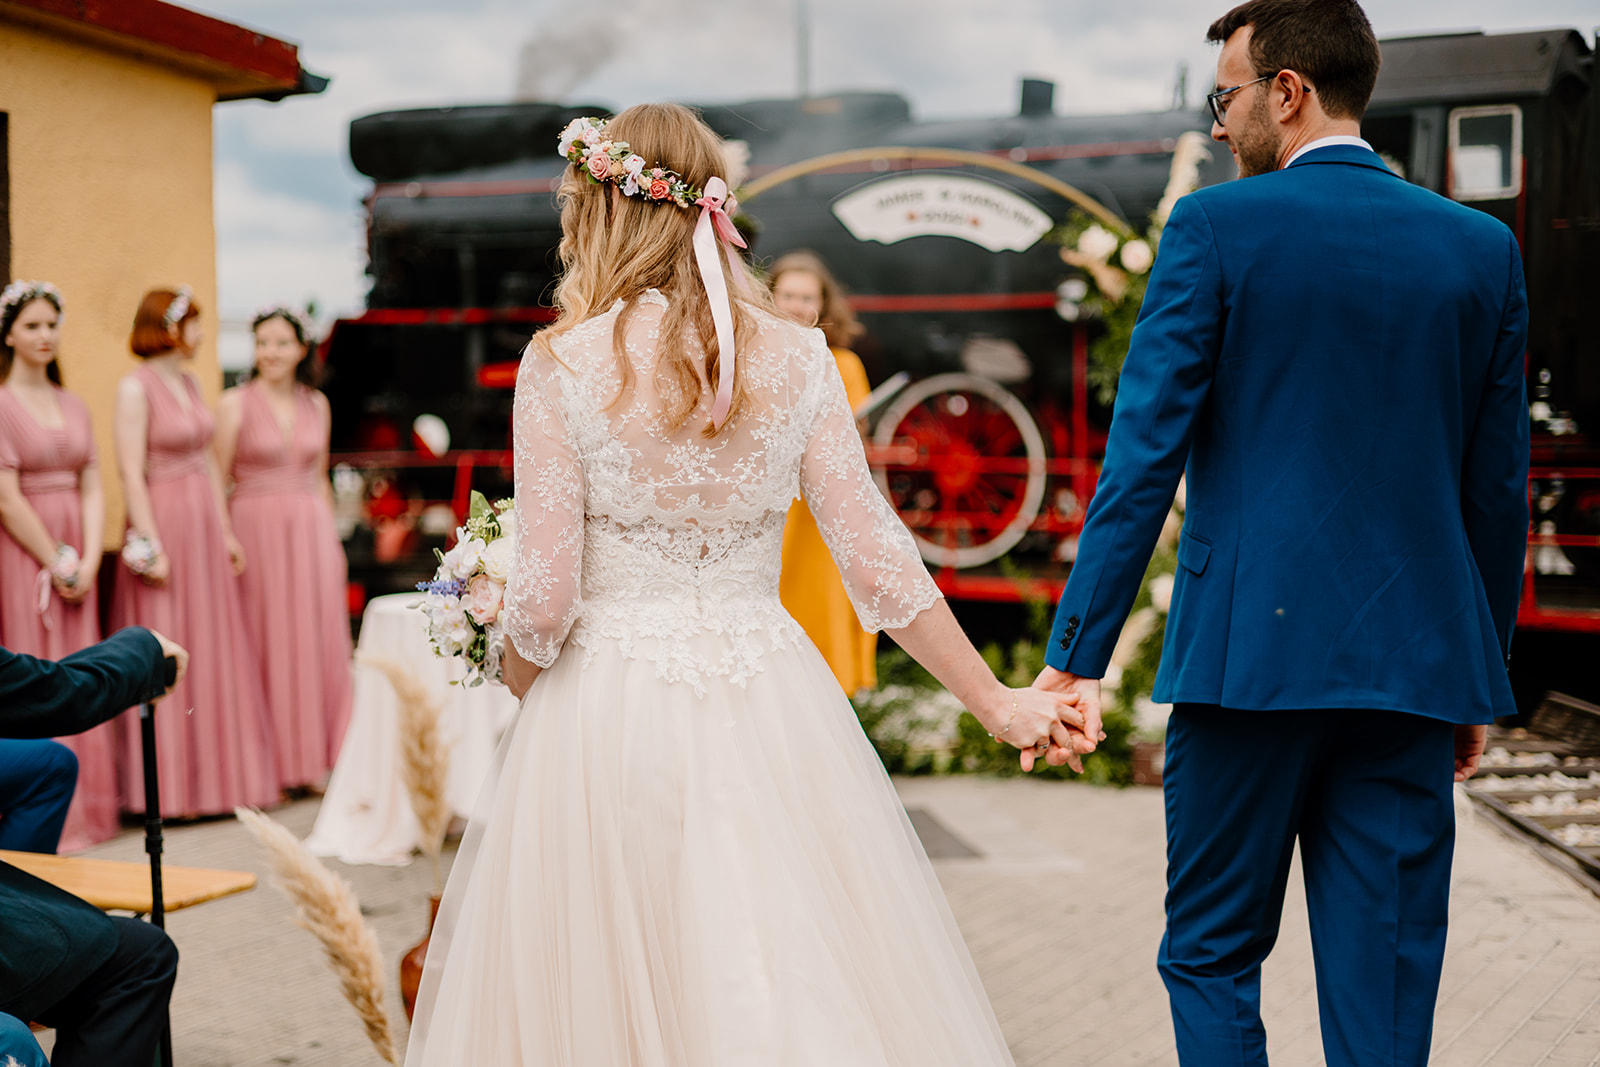 Ślub i wesele z motywem podróży, motyw podróży na weselu, stylizowane przyjęcia ślubne, wesele z wedding plannerem, wesele tematyczne.